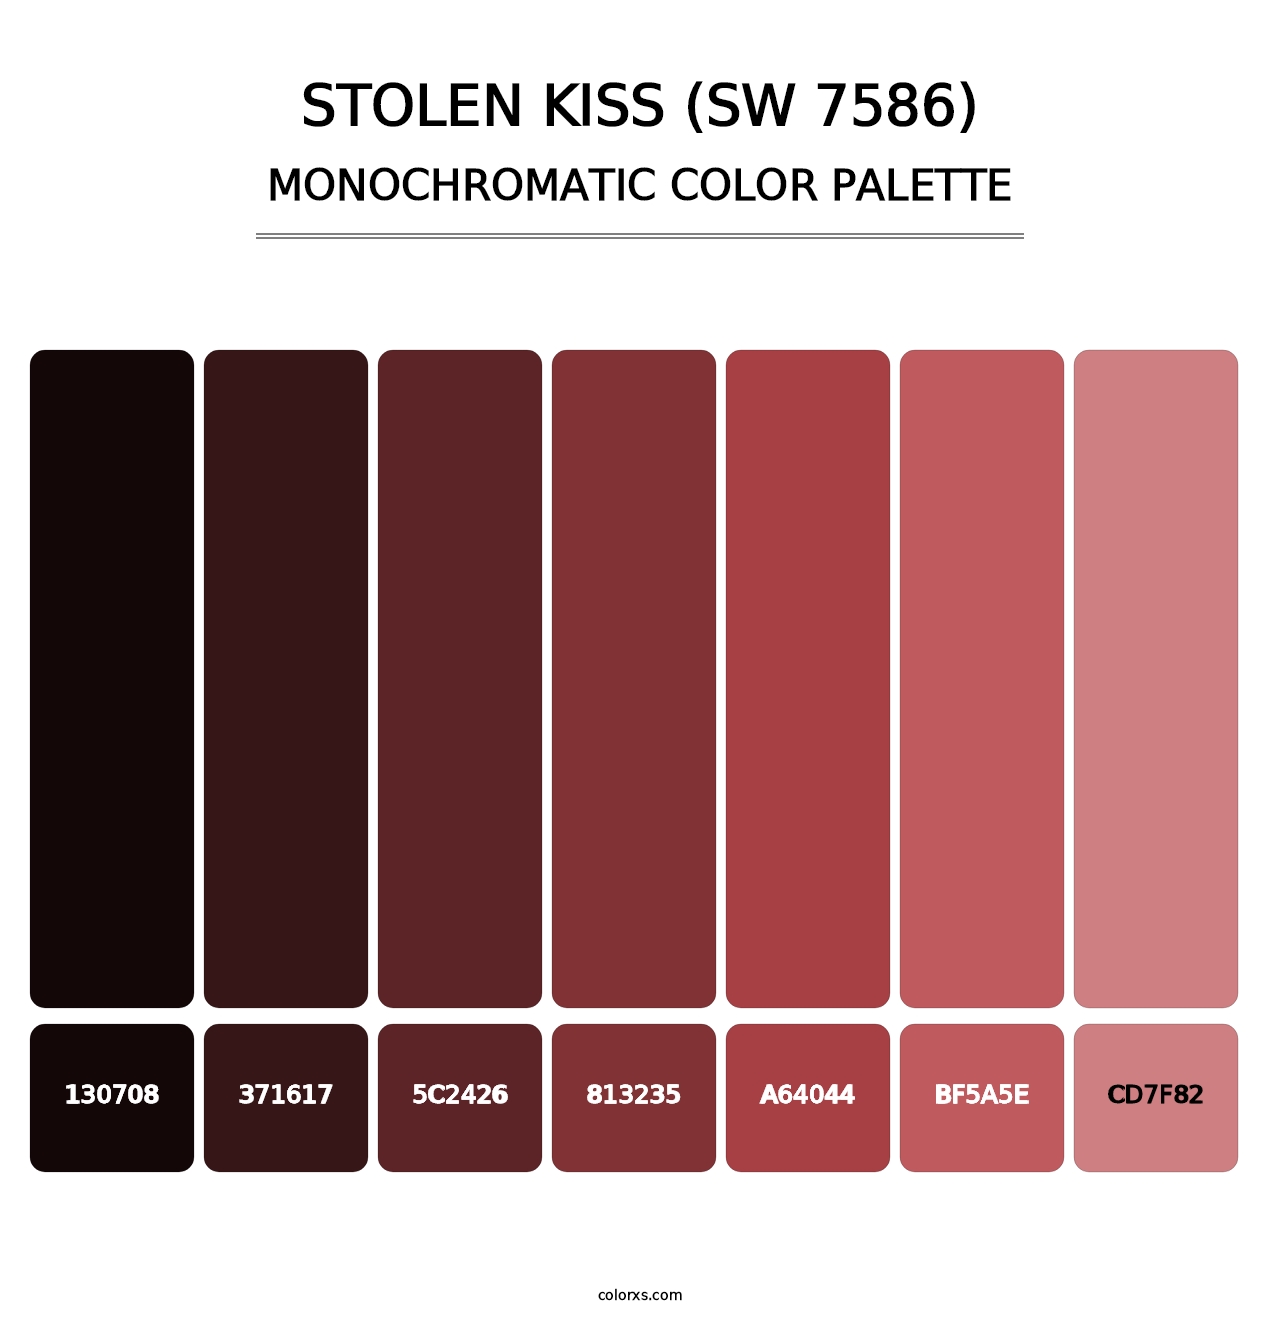 Stolen Kiss (SW 7586) - Monochromatic Color Palette